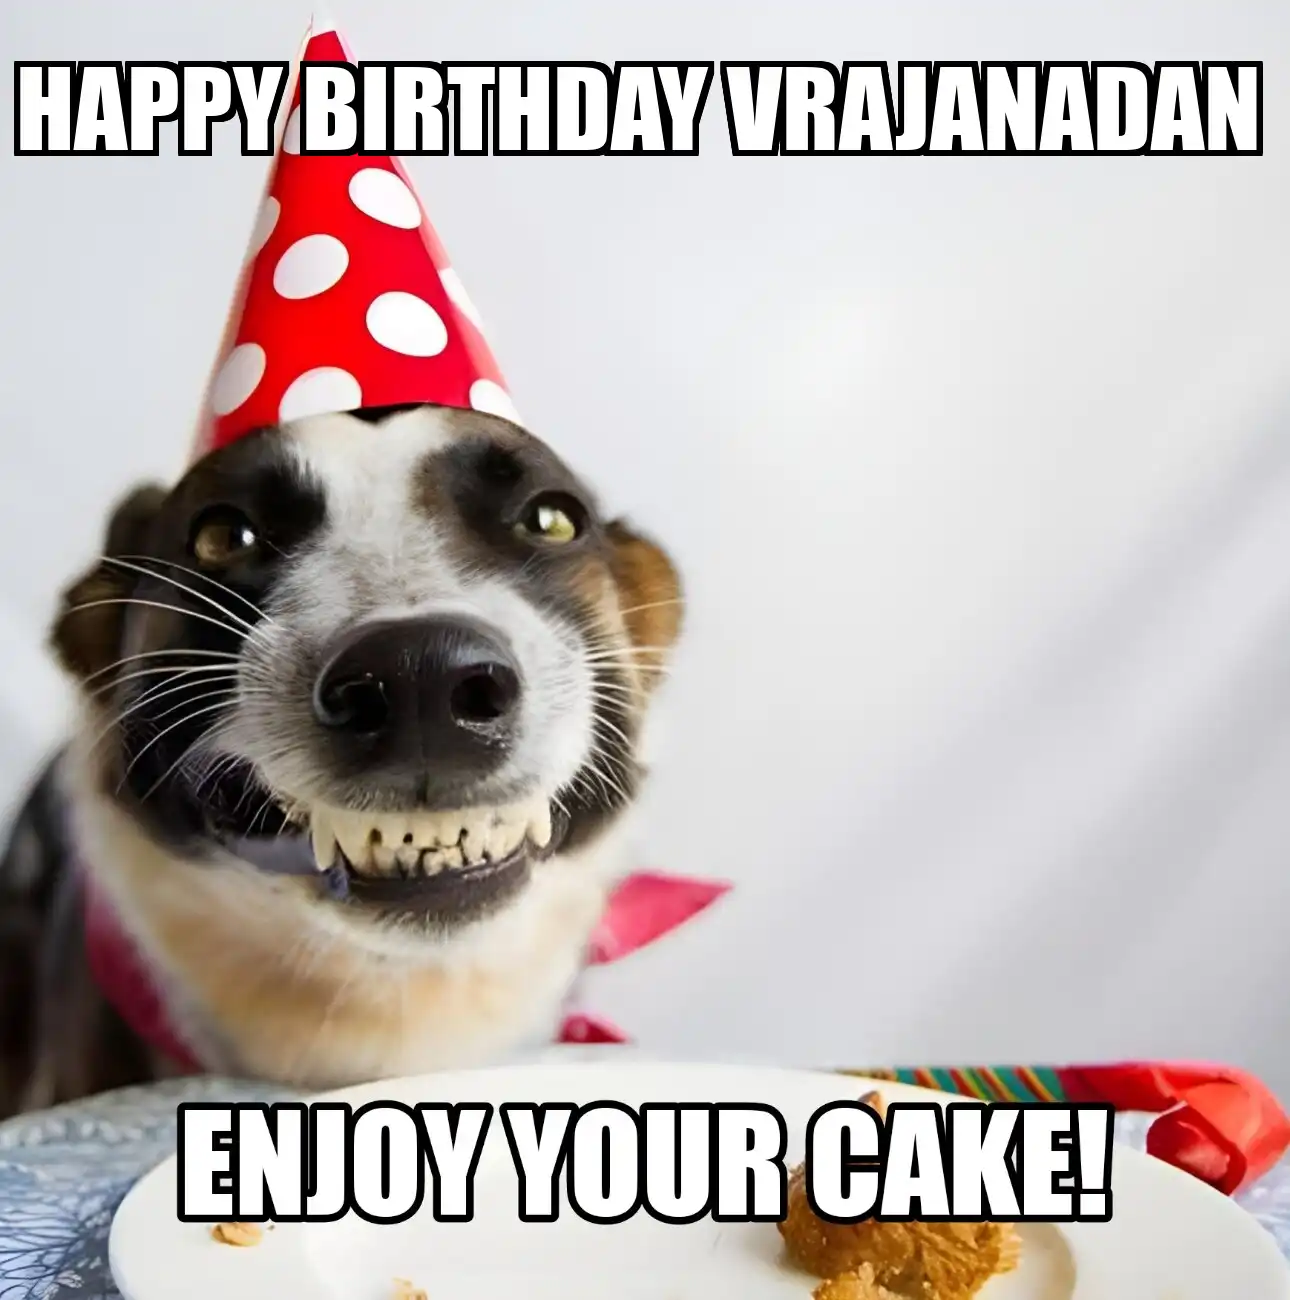 Happy Birthday Vrajanadan Enjoy Your Cake Dog Meme